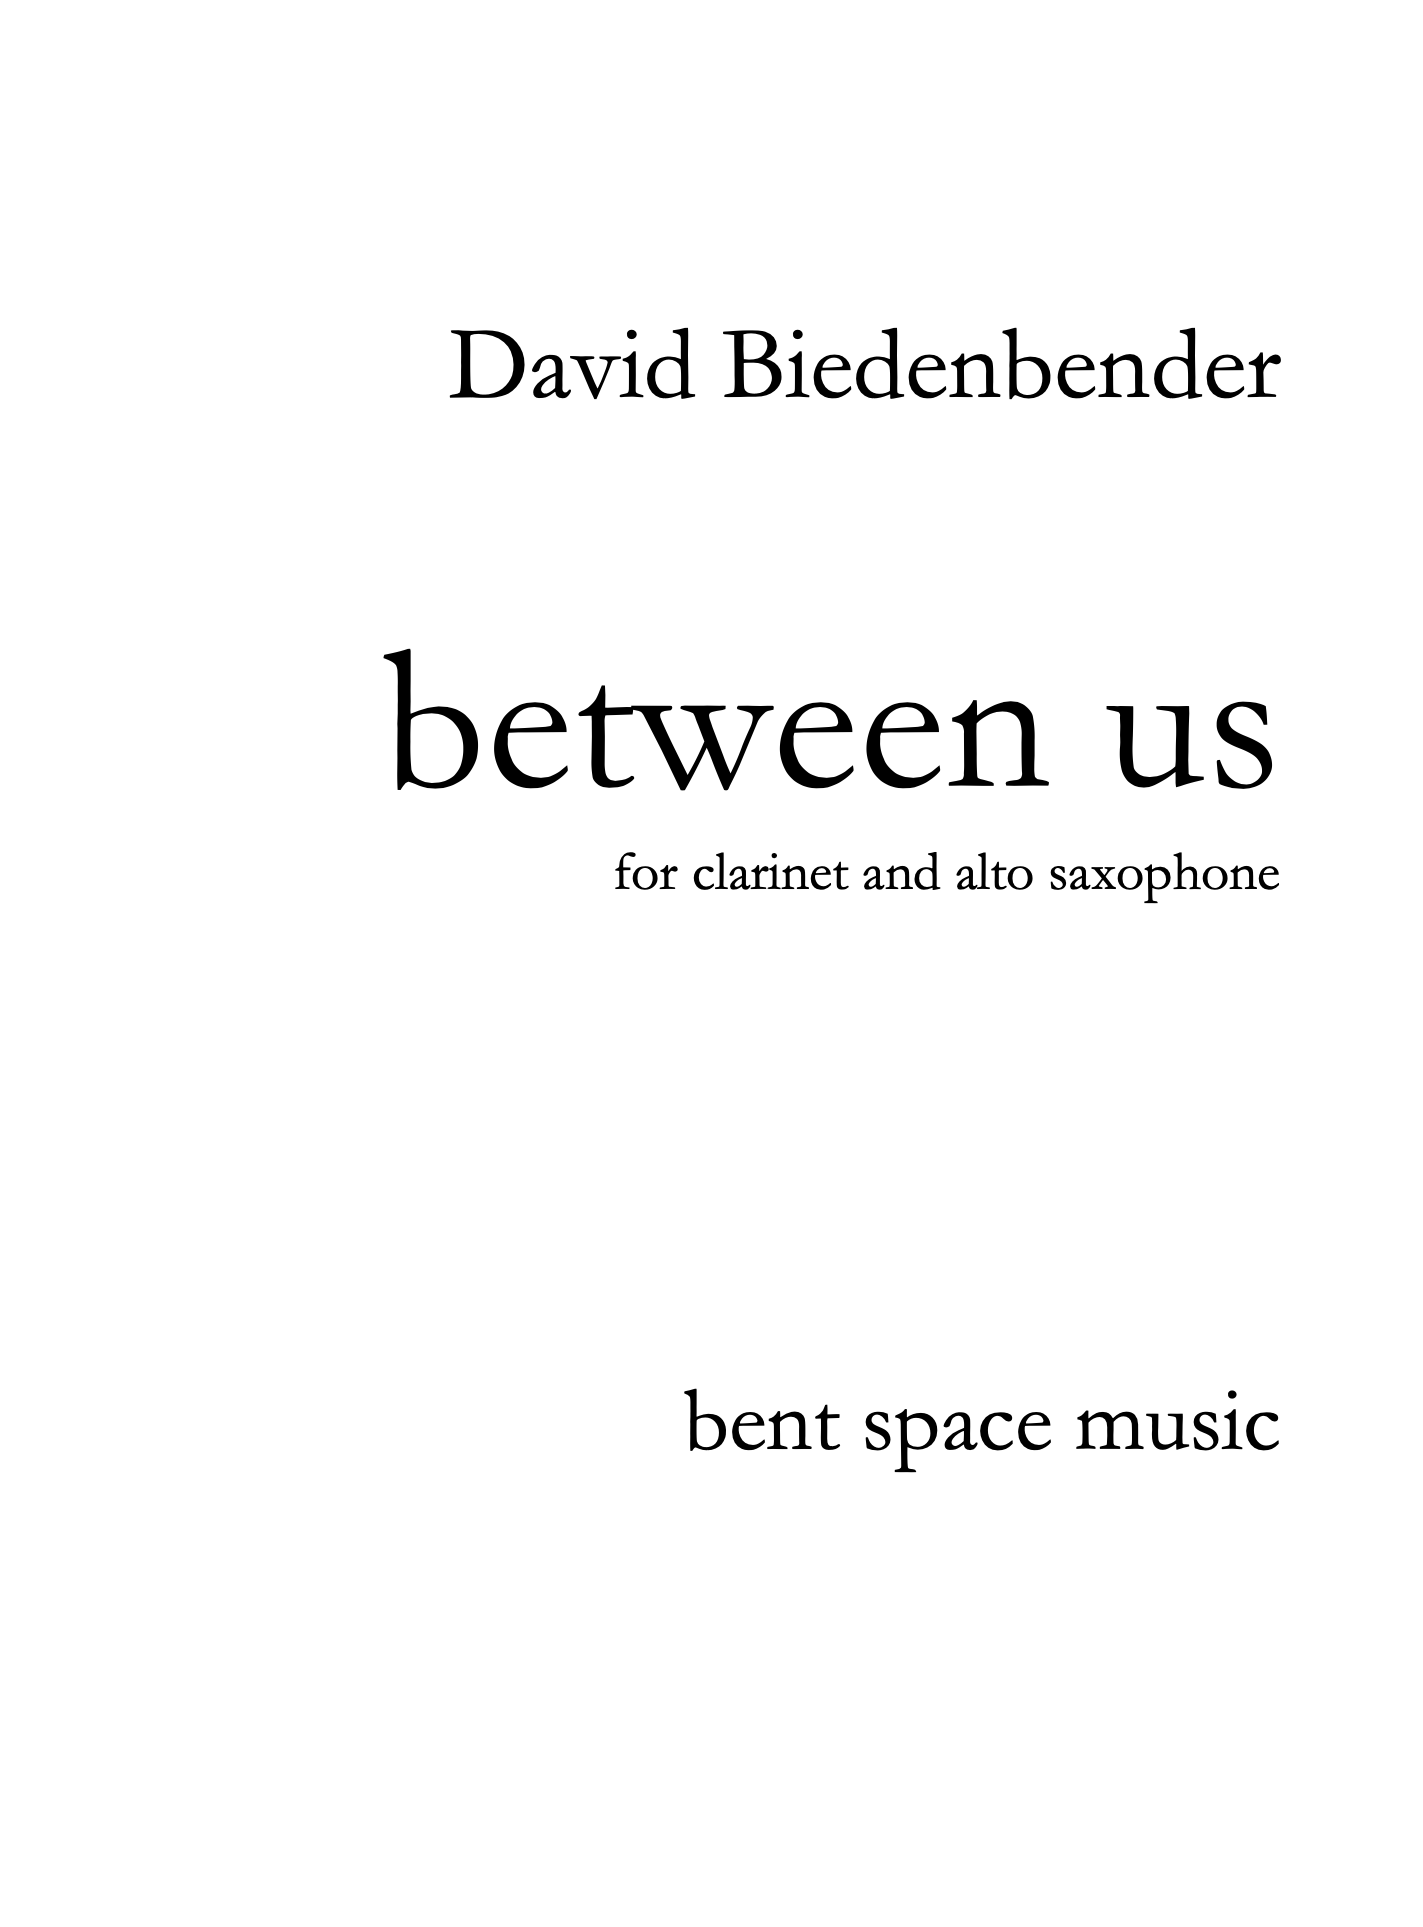 Between Us by David Biedenbender